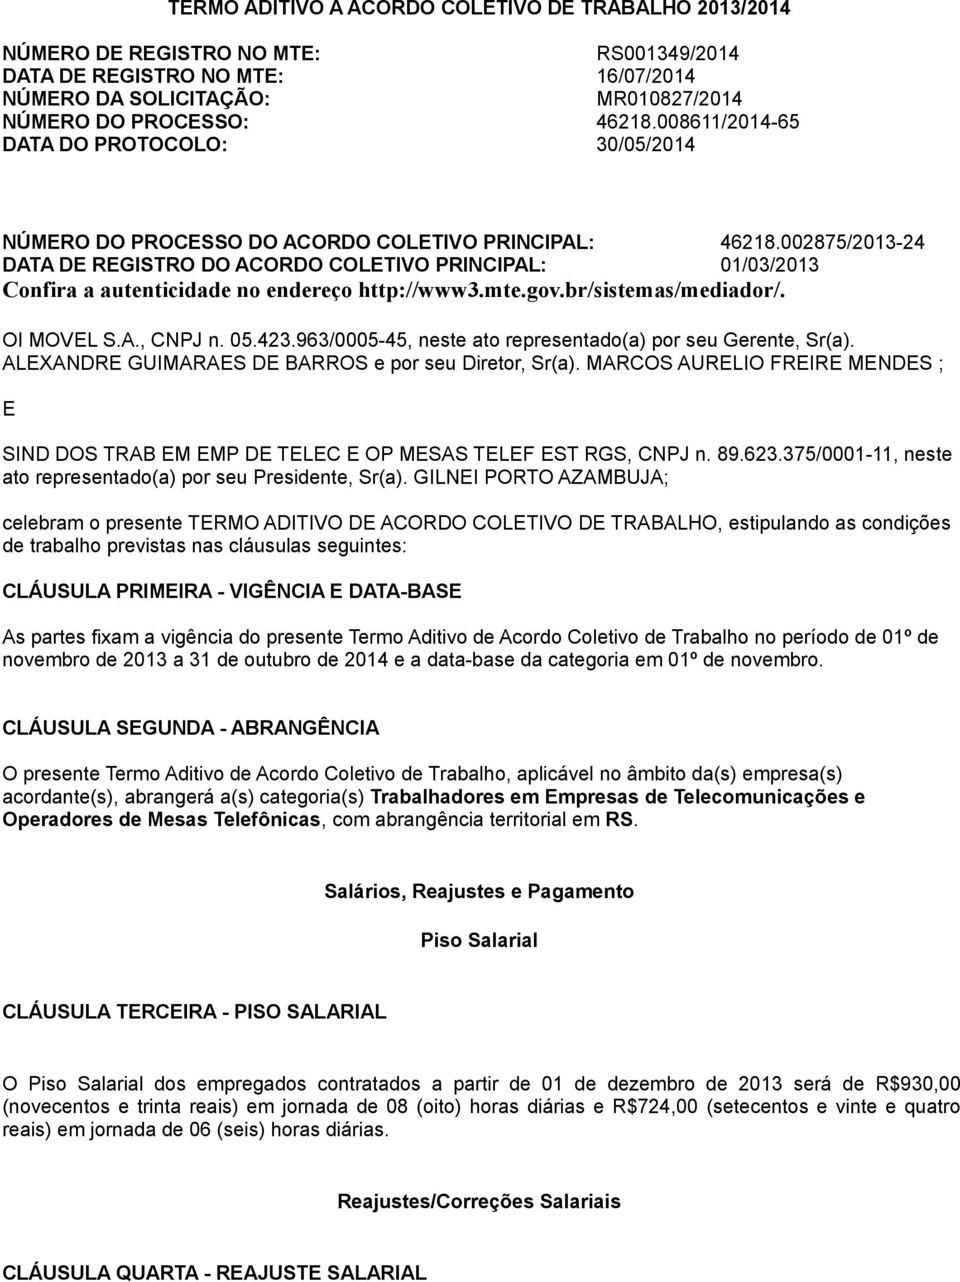 002875/2013-24 DATA DE REGISTRO DO ACORDO COLETIVO PRINCIPAL: 01/03/2013 Confira a autenticidade no endereço http://www3.mte.gov.br/sistemas/mediador/. OI MOVEL S.A., CNPJ n. 05.423.